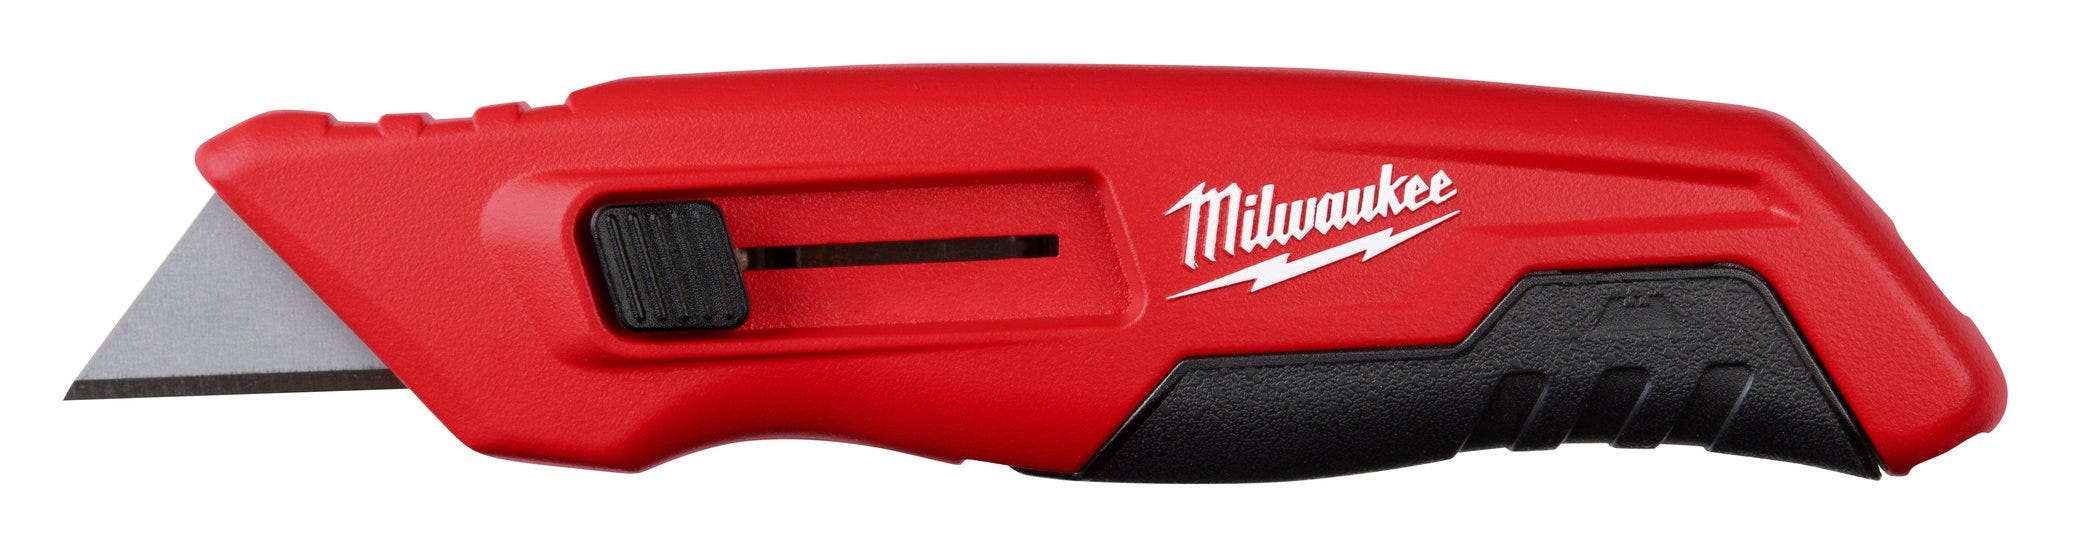 milwaukee-side-sliding-utility-knife-48-22-1516